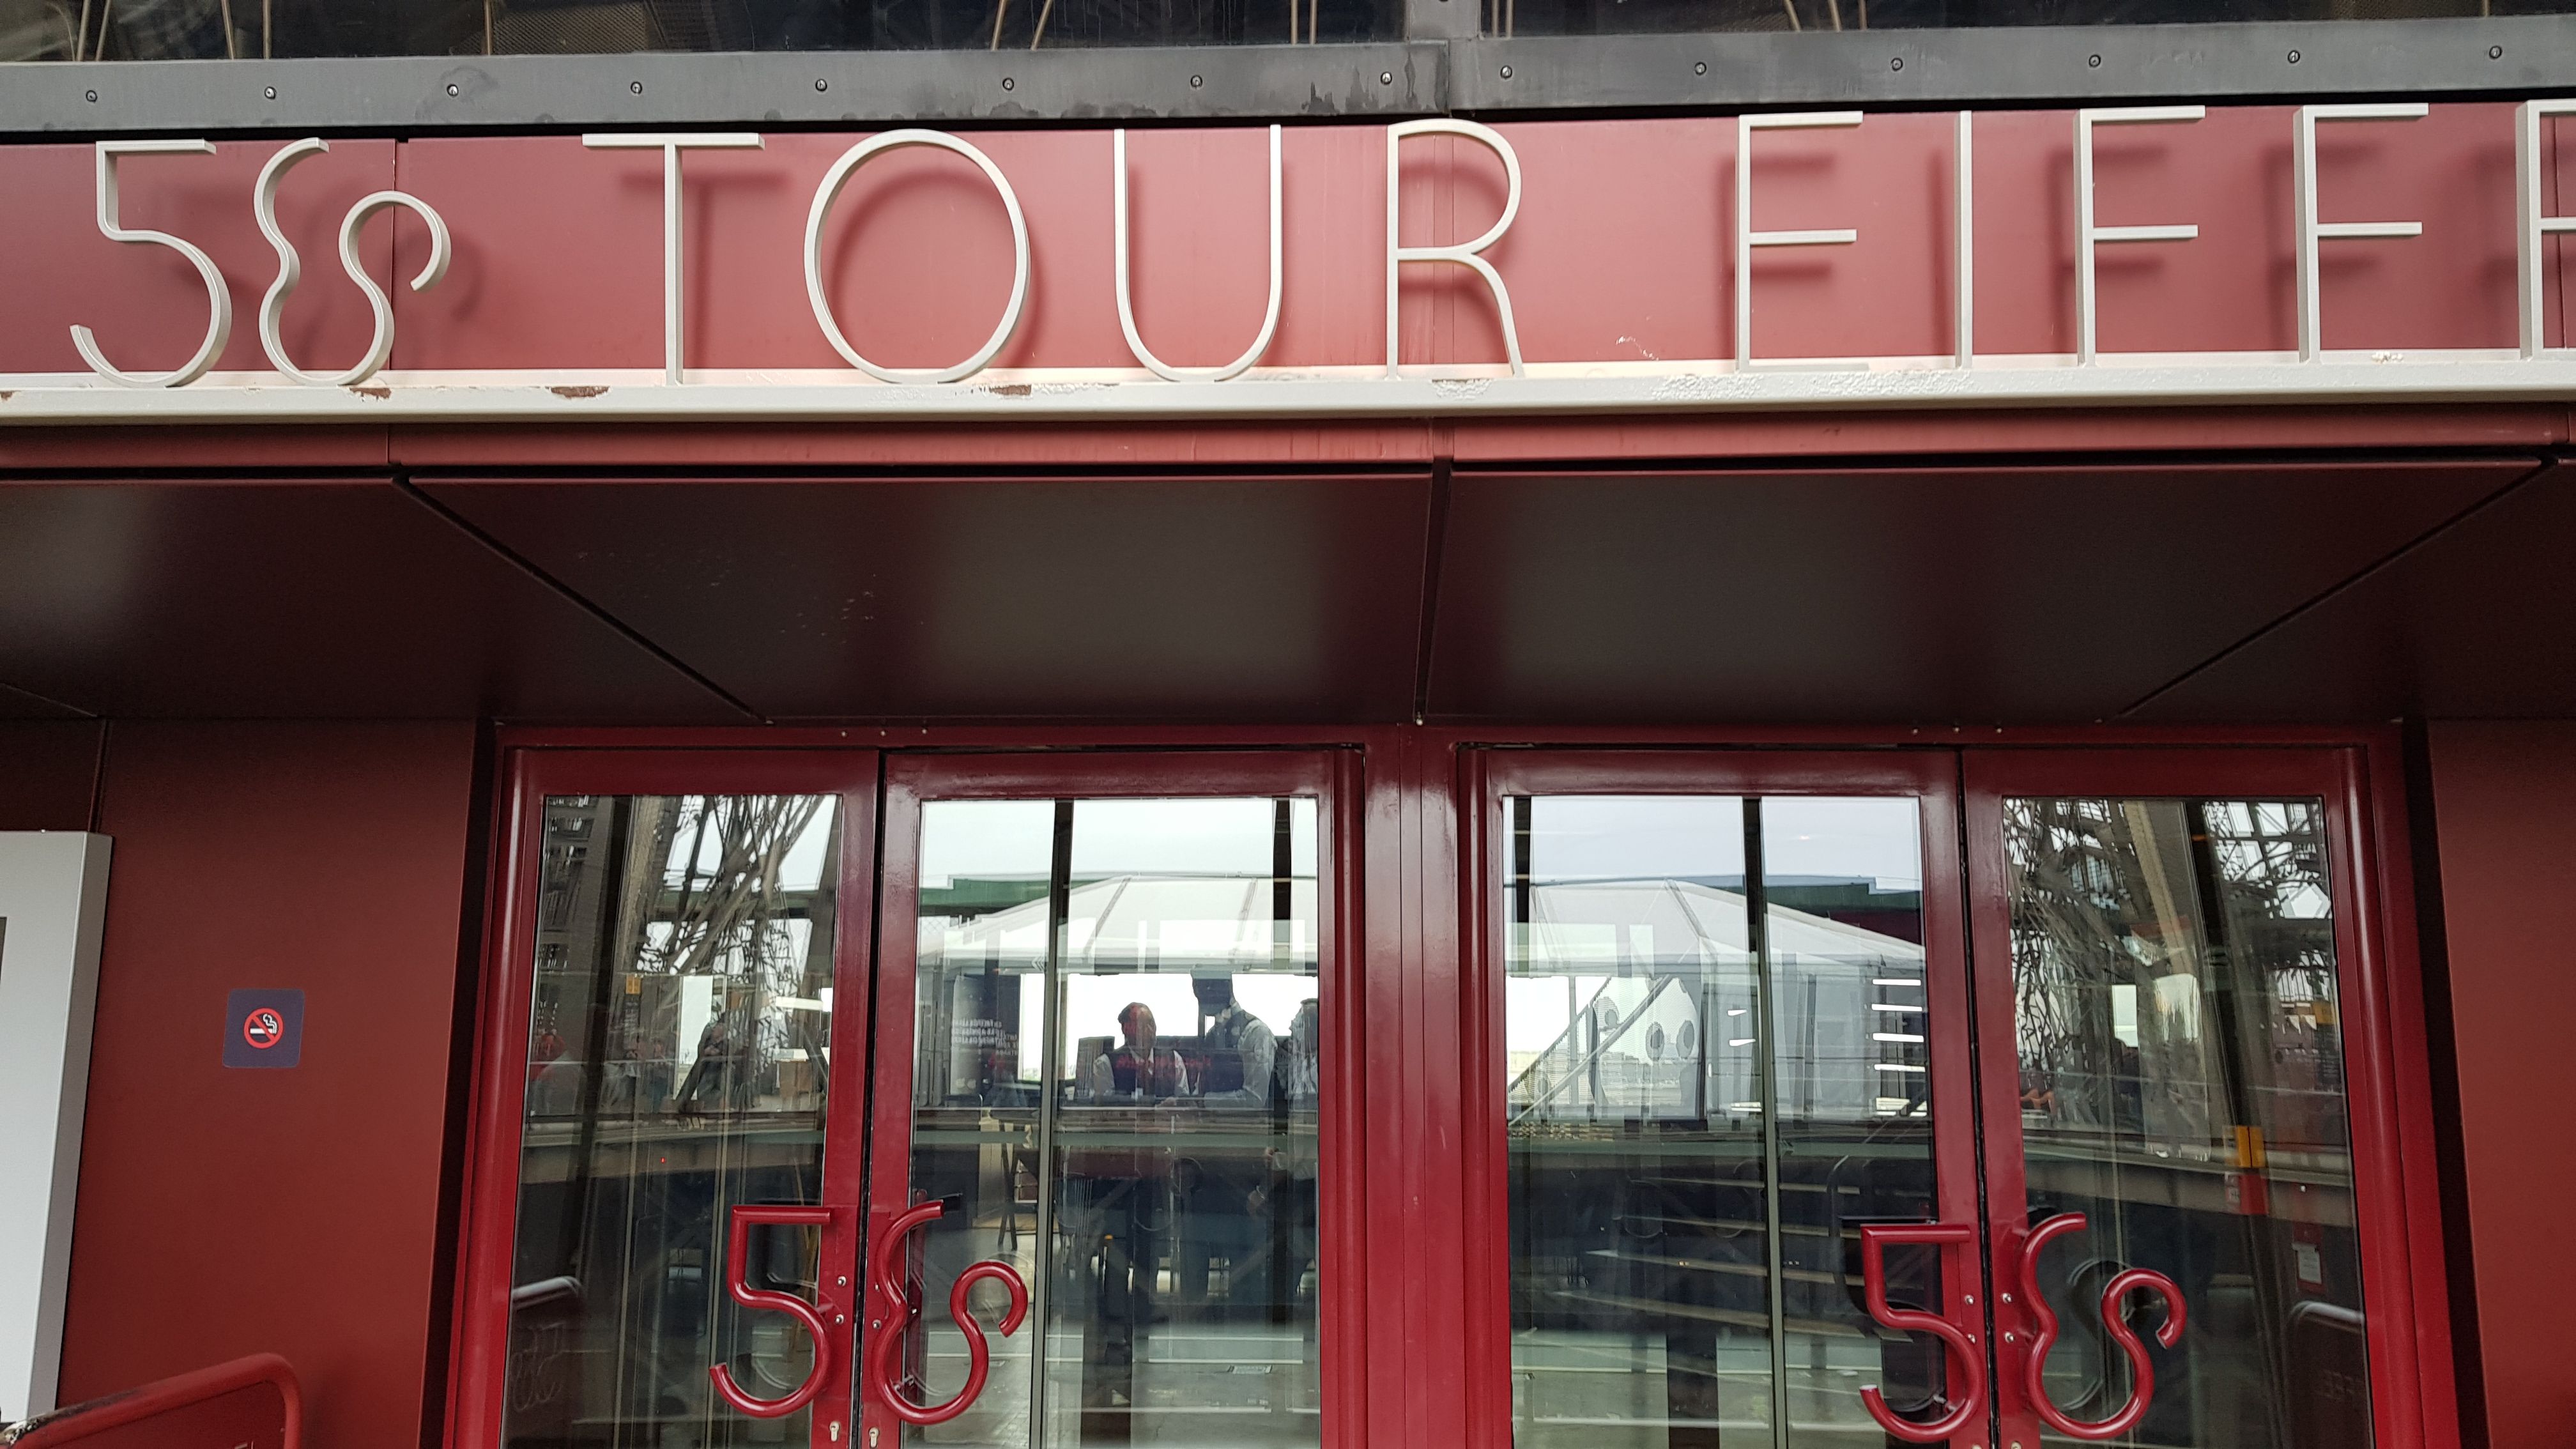 에펠탑 1층 전망대에 위치한 레스토랑 58  TOUR EIFFEL 점심식사 후기